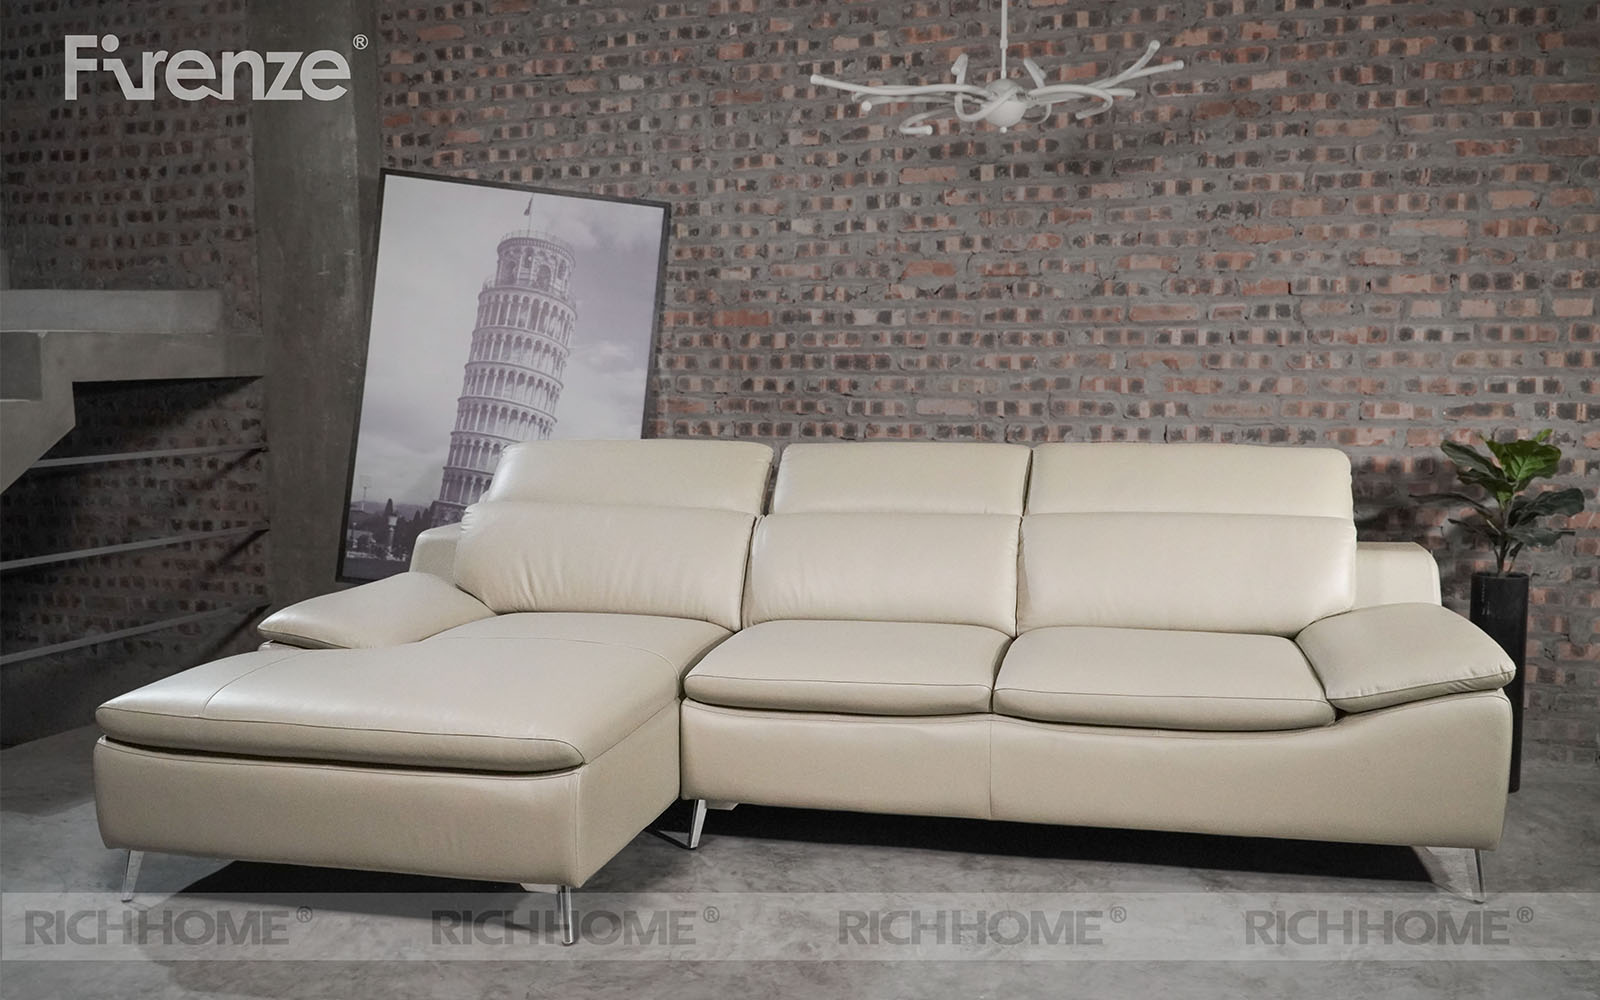 Các mẫu sofa cho căn hộ nhỏ diện tích 25m2 - Ảnh 9